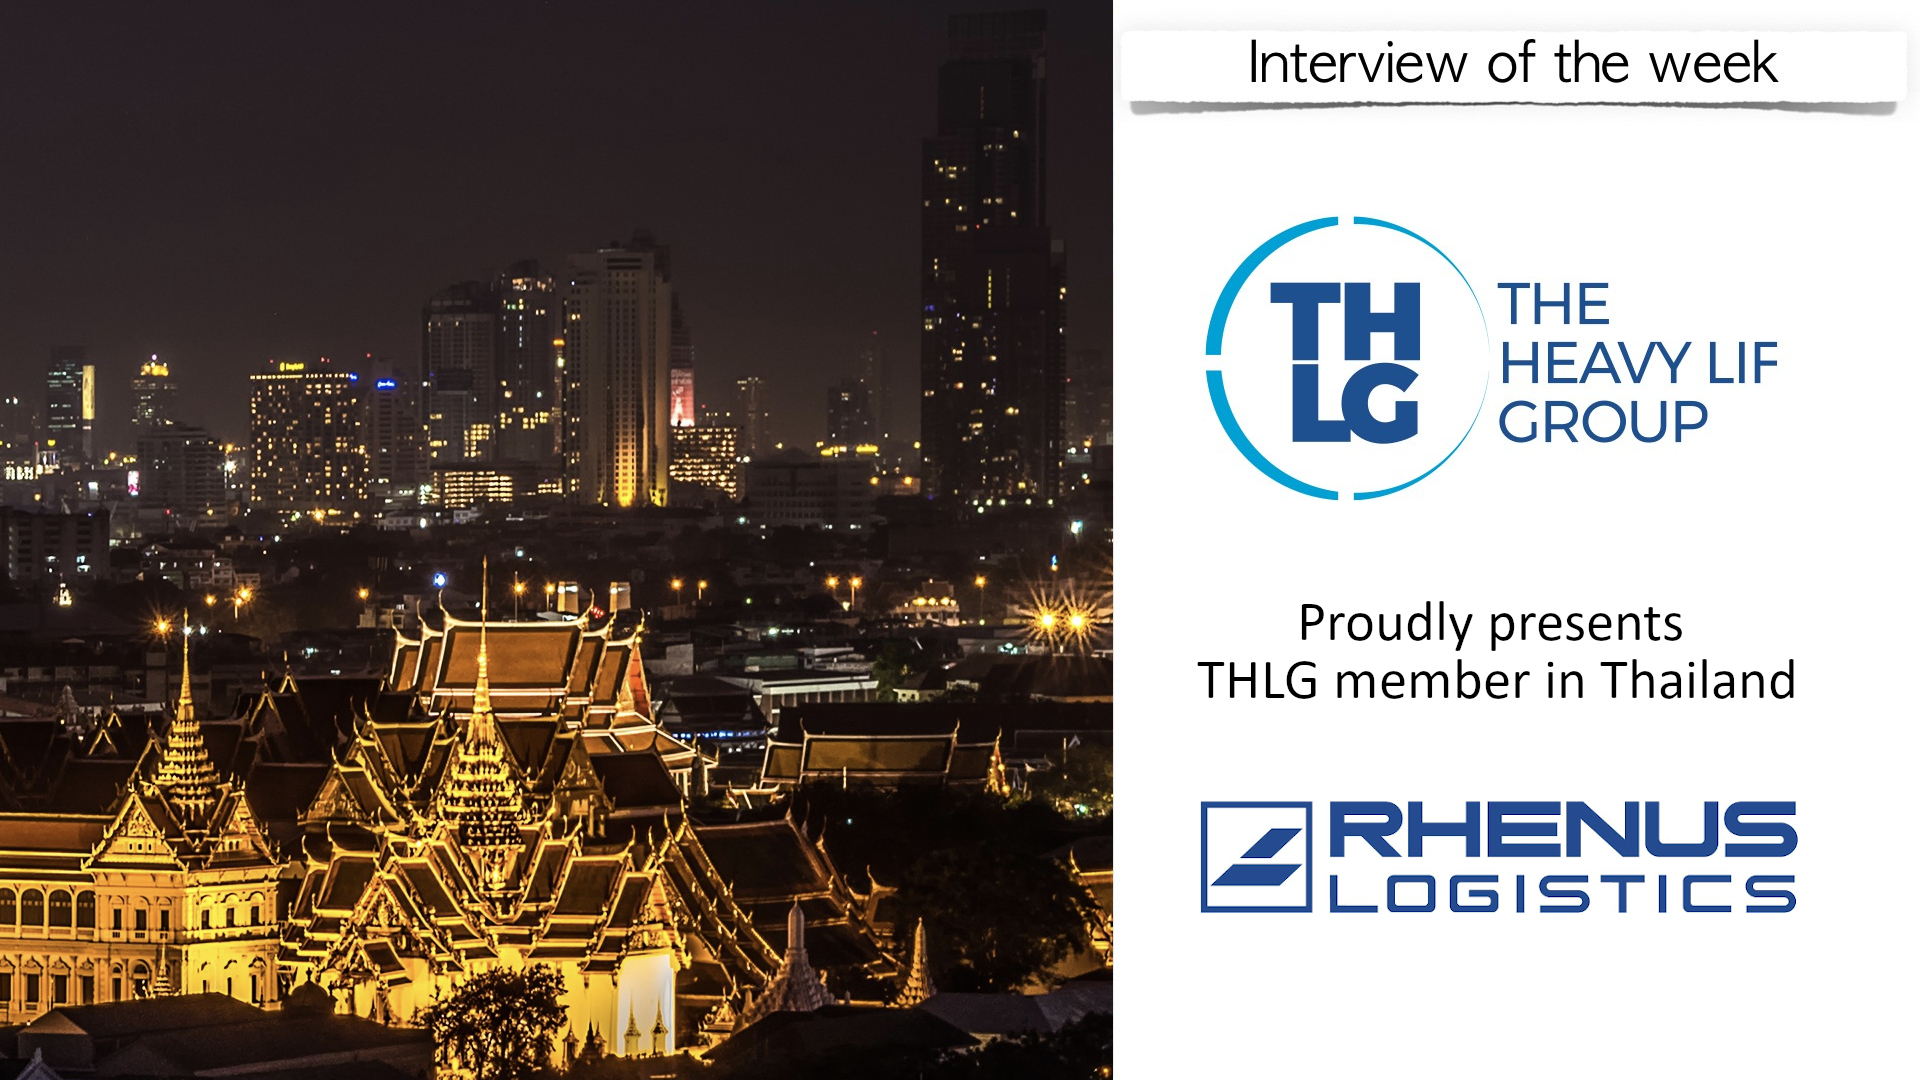 rhenus_thailand_interview.jpeg